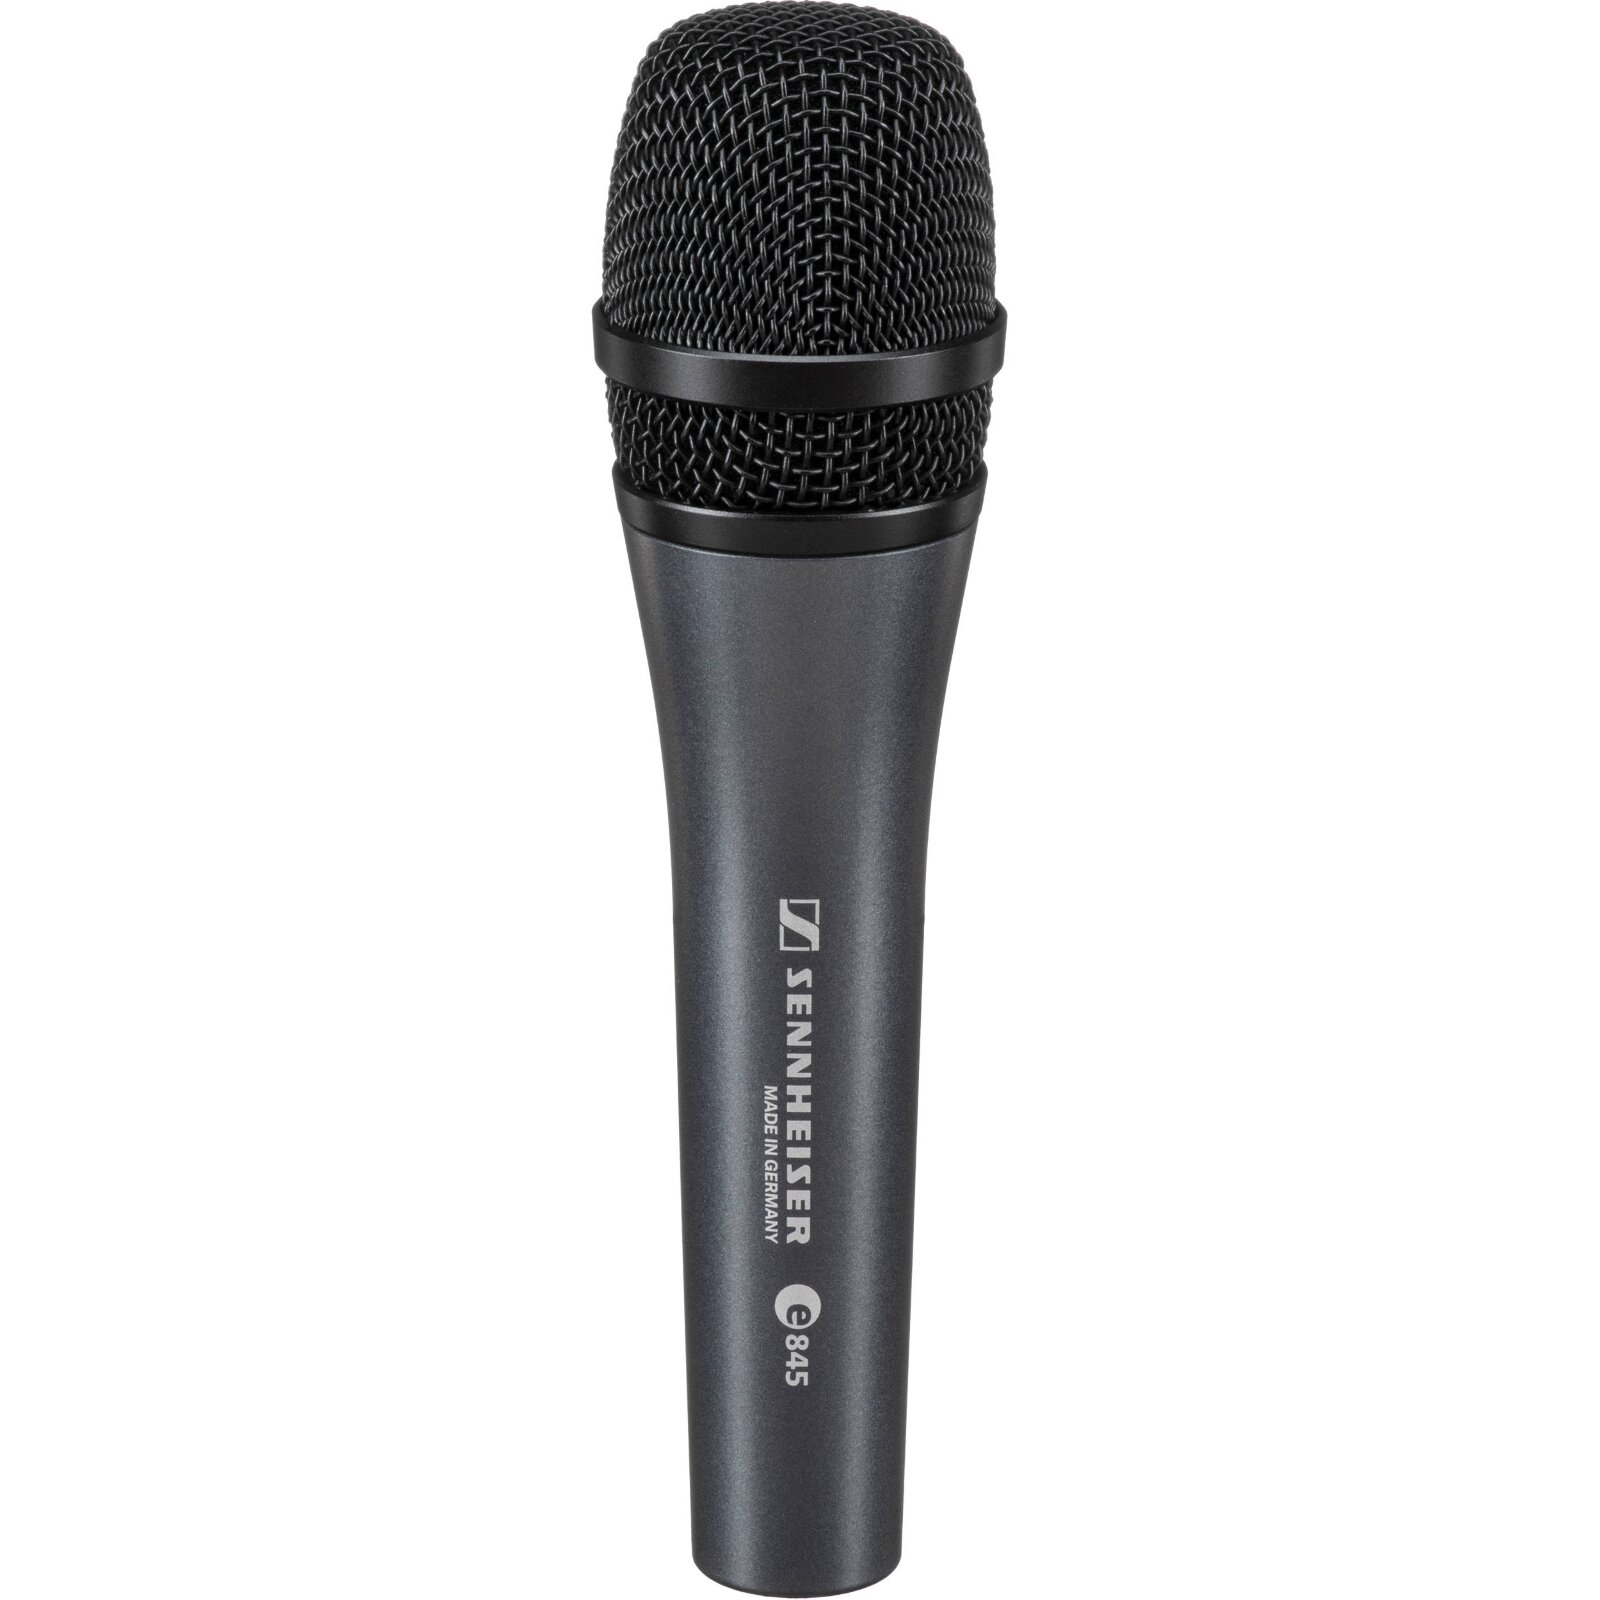 Sennheiser e 845 Dynamic Vocal Microphone : photo 1